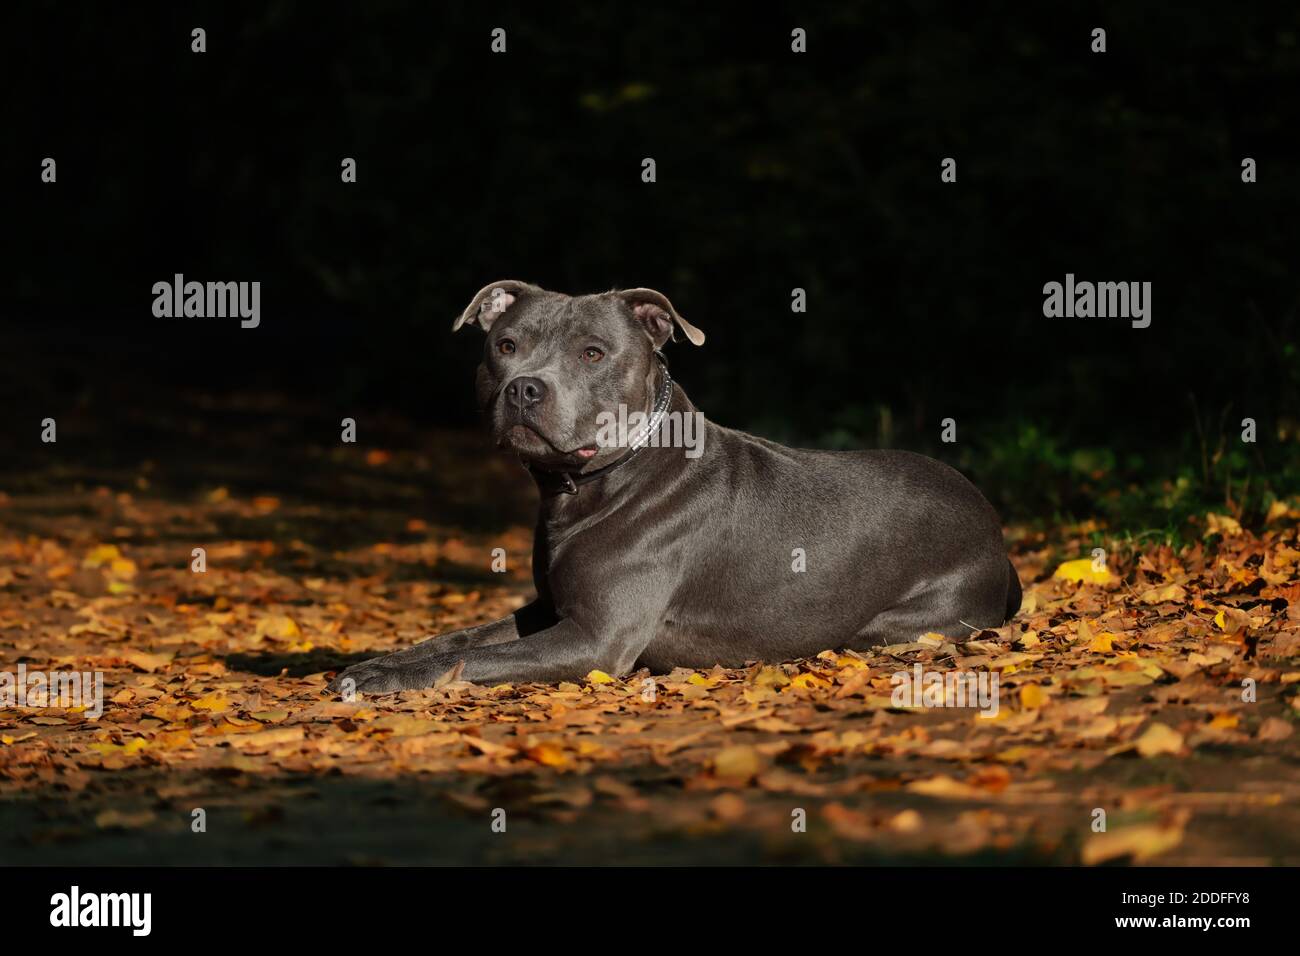 Englisch Staffordshire Bull Terrier liegt auf bunt gefallenen Blättern. Liebenswert blau Staffy in der Natur während der Herbstsaison mit dunklen Hintergrund. Stockfoto